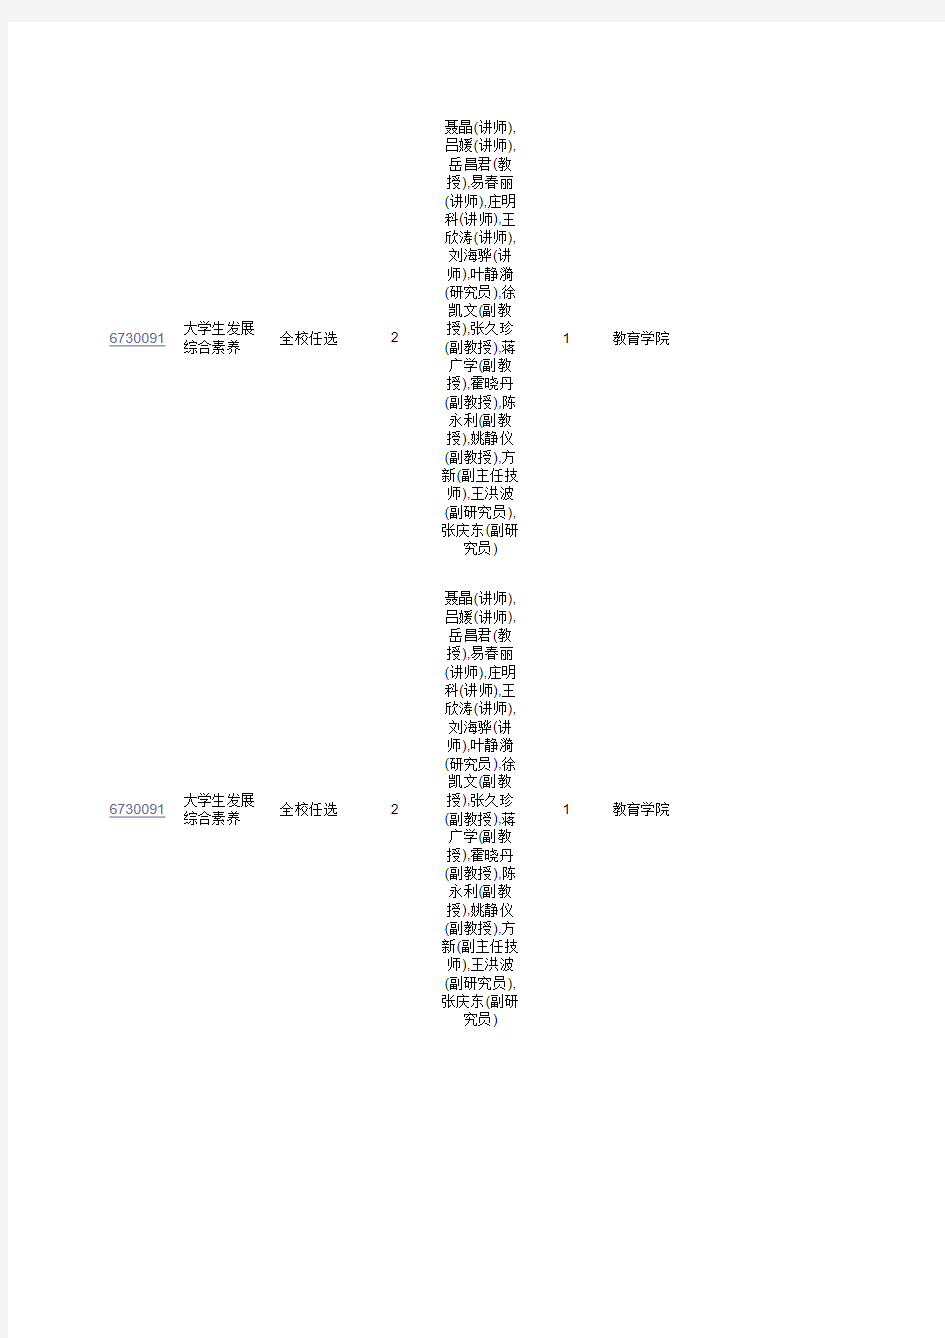 北京大学2014年秋季课程表(公选课)